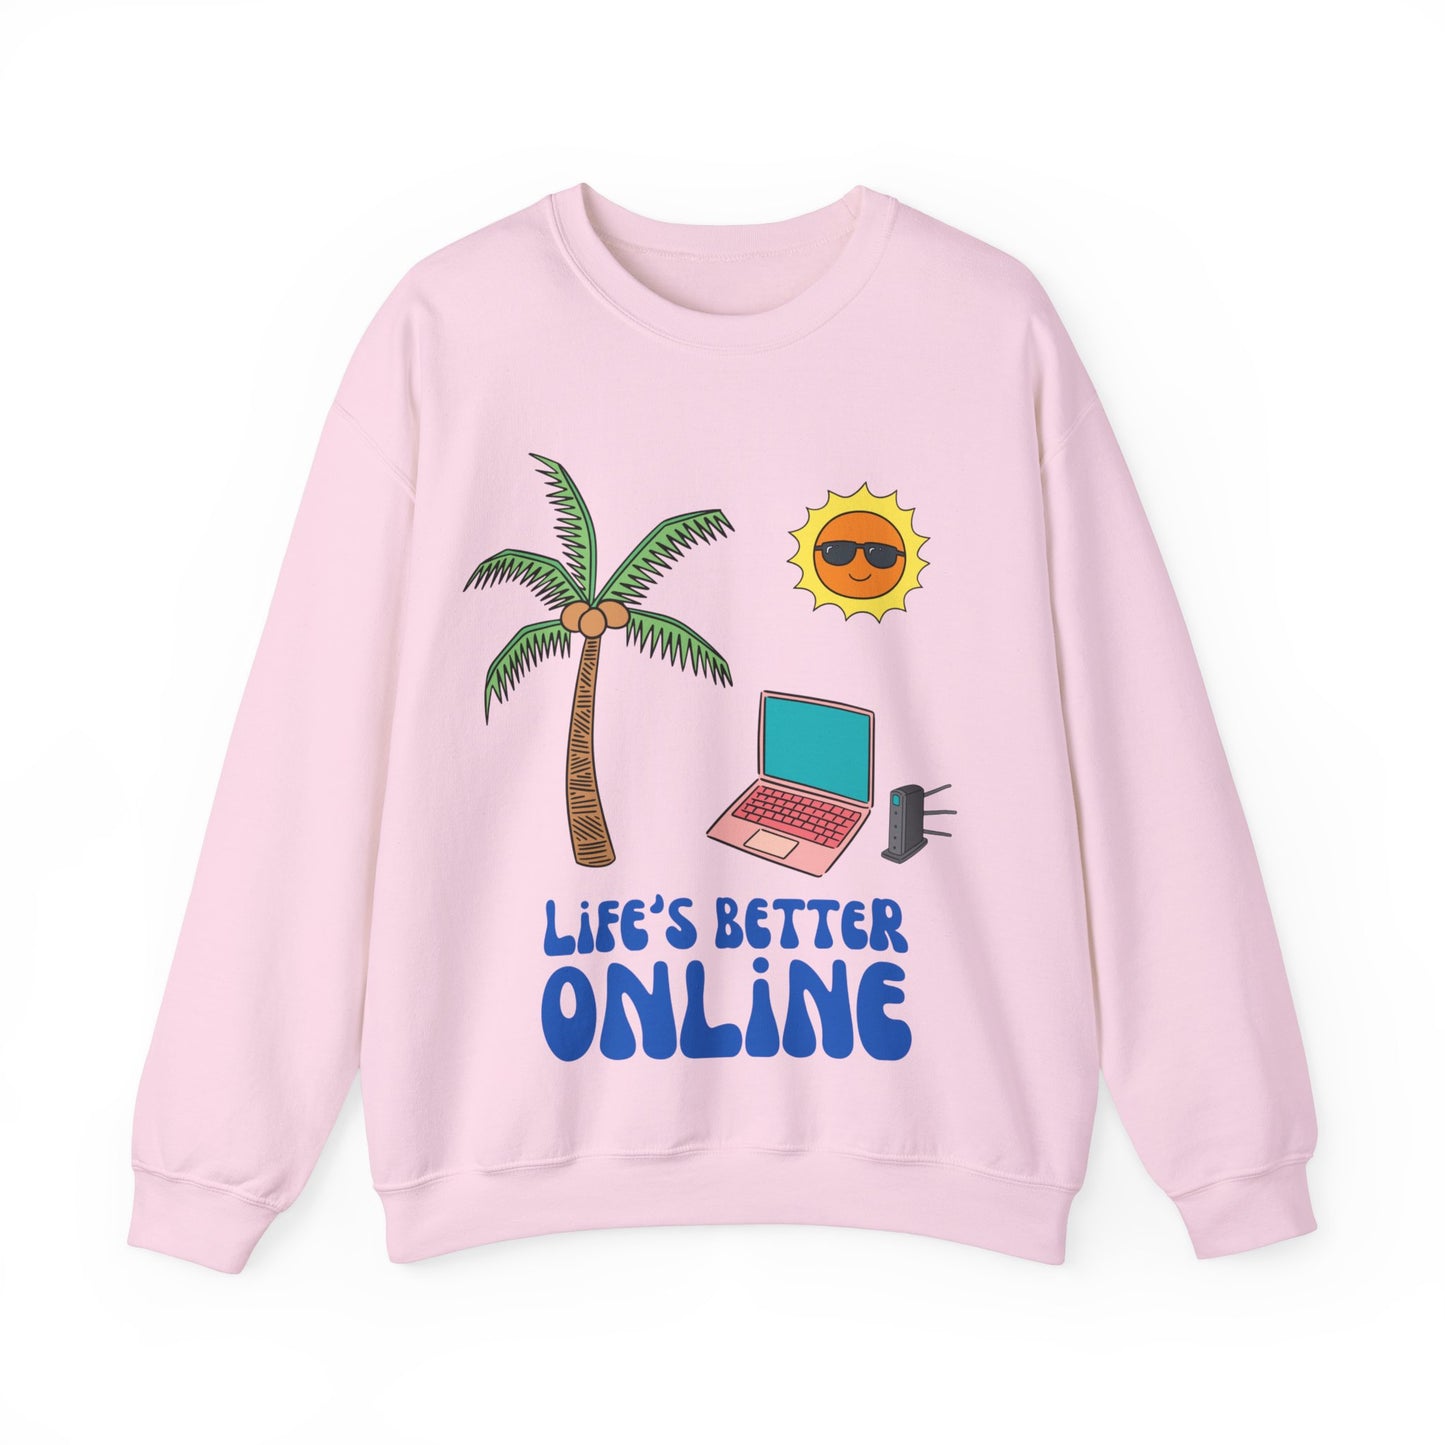 "Life's Better Online" Sweatshirt